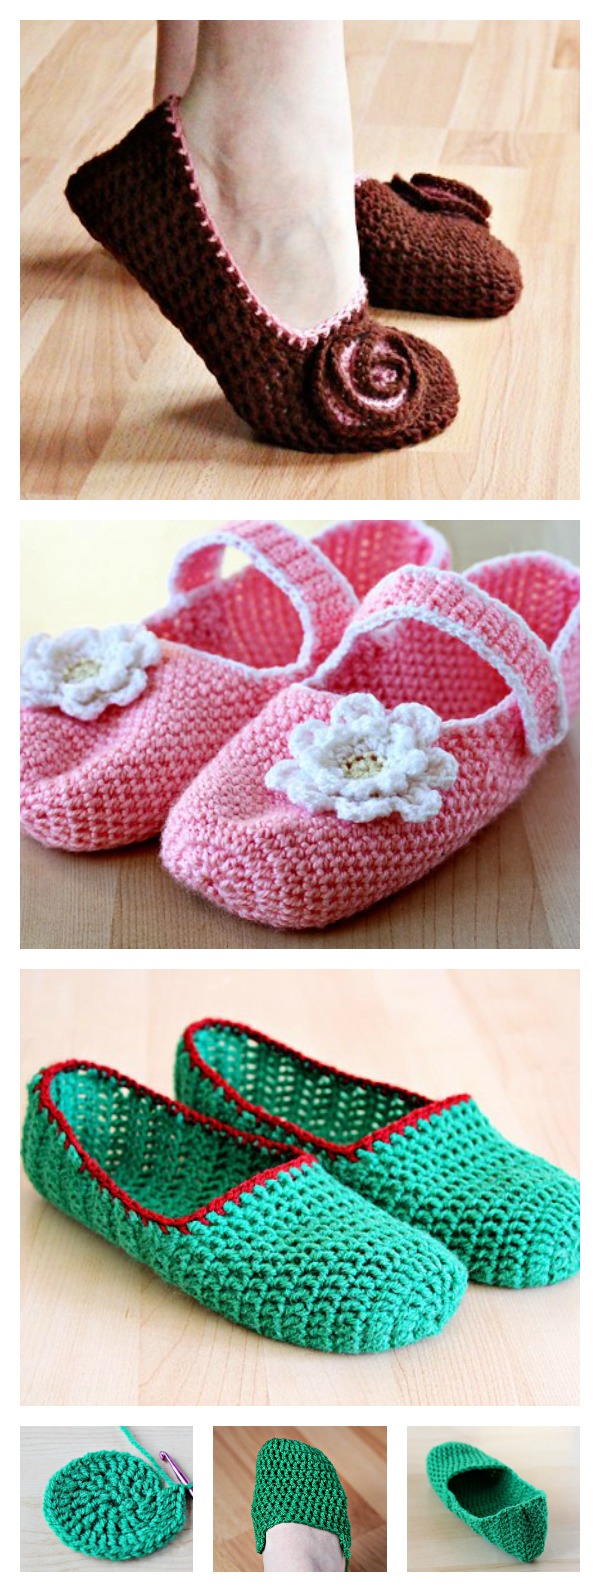 Simple Crochet Slippers Free Pattern